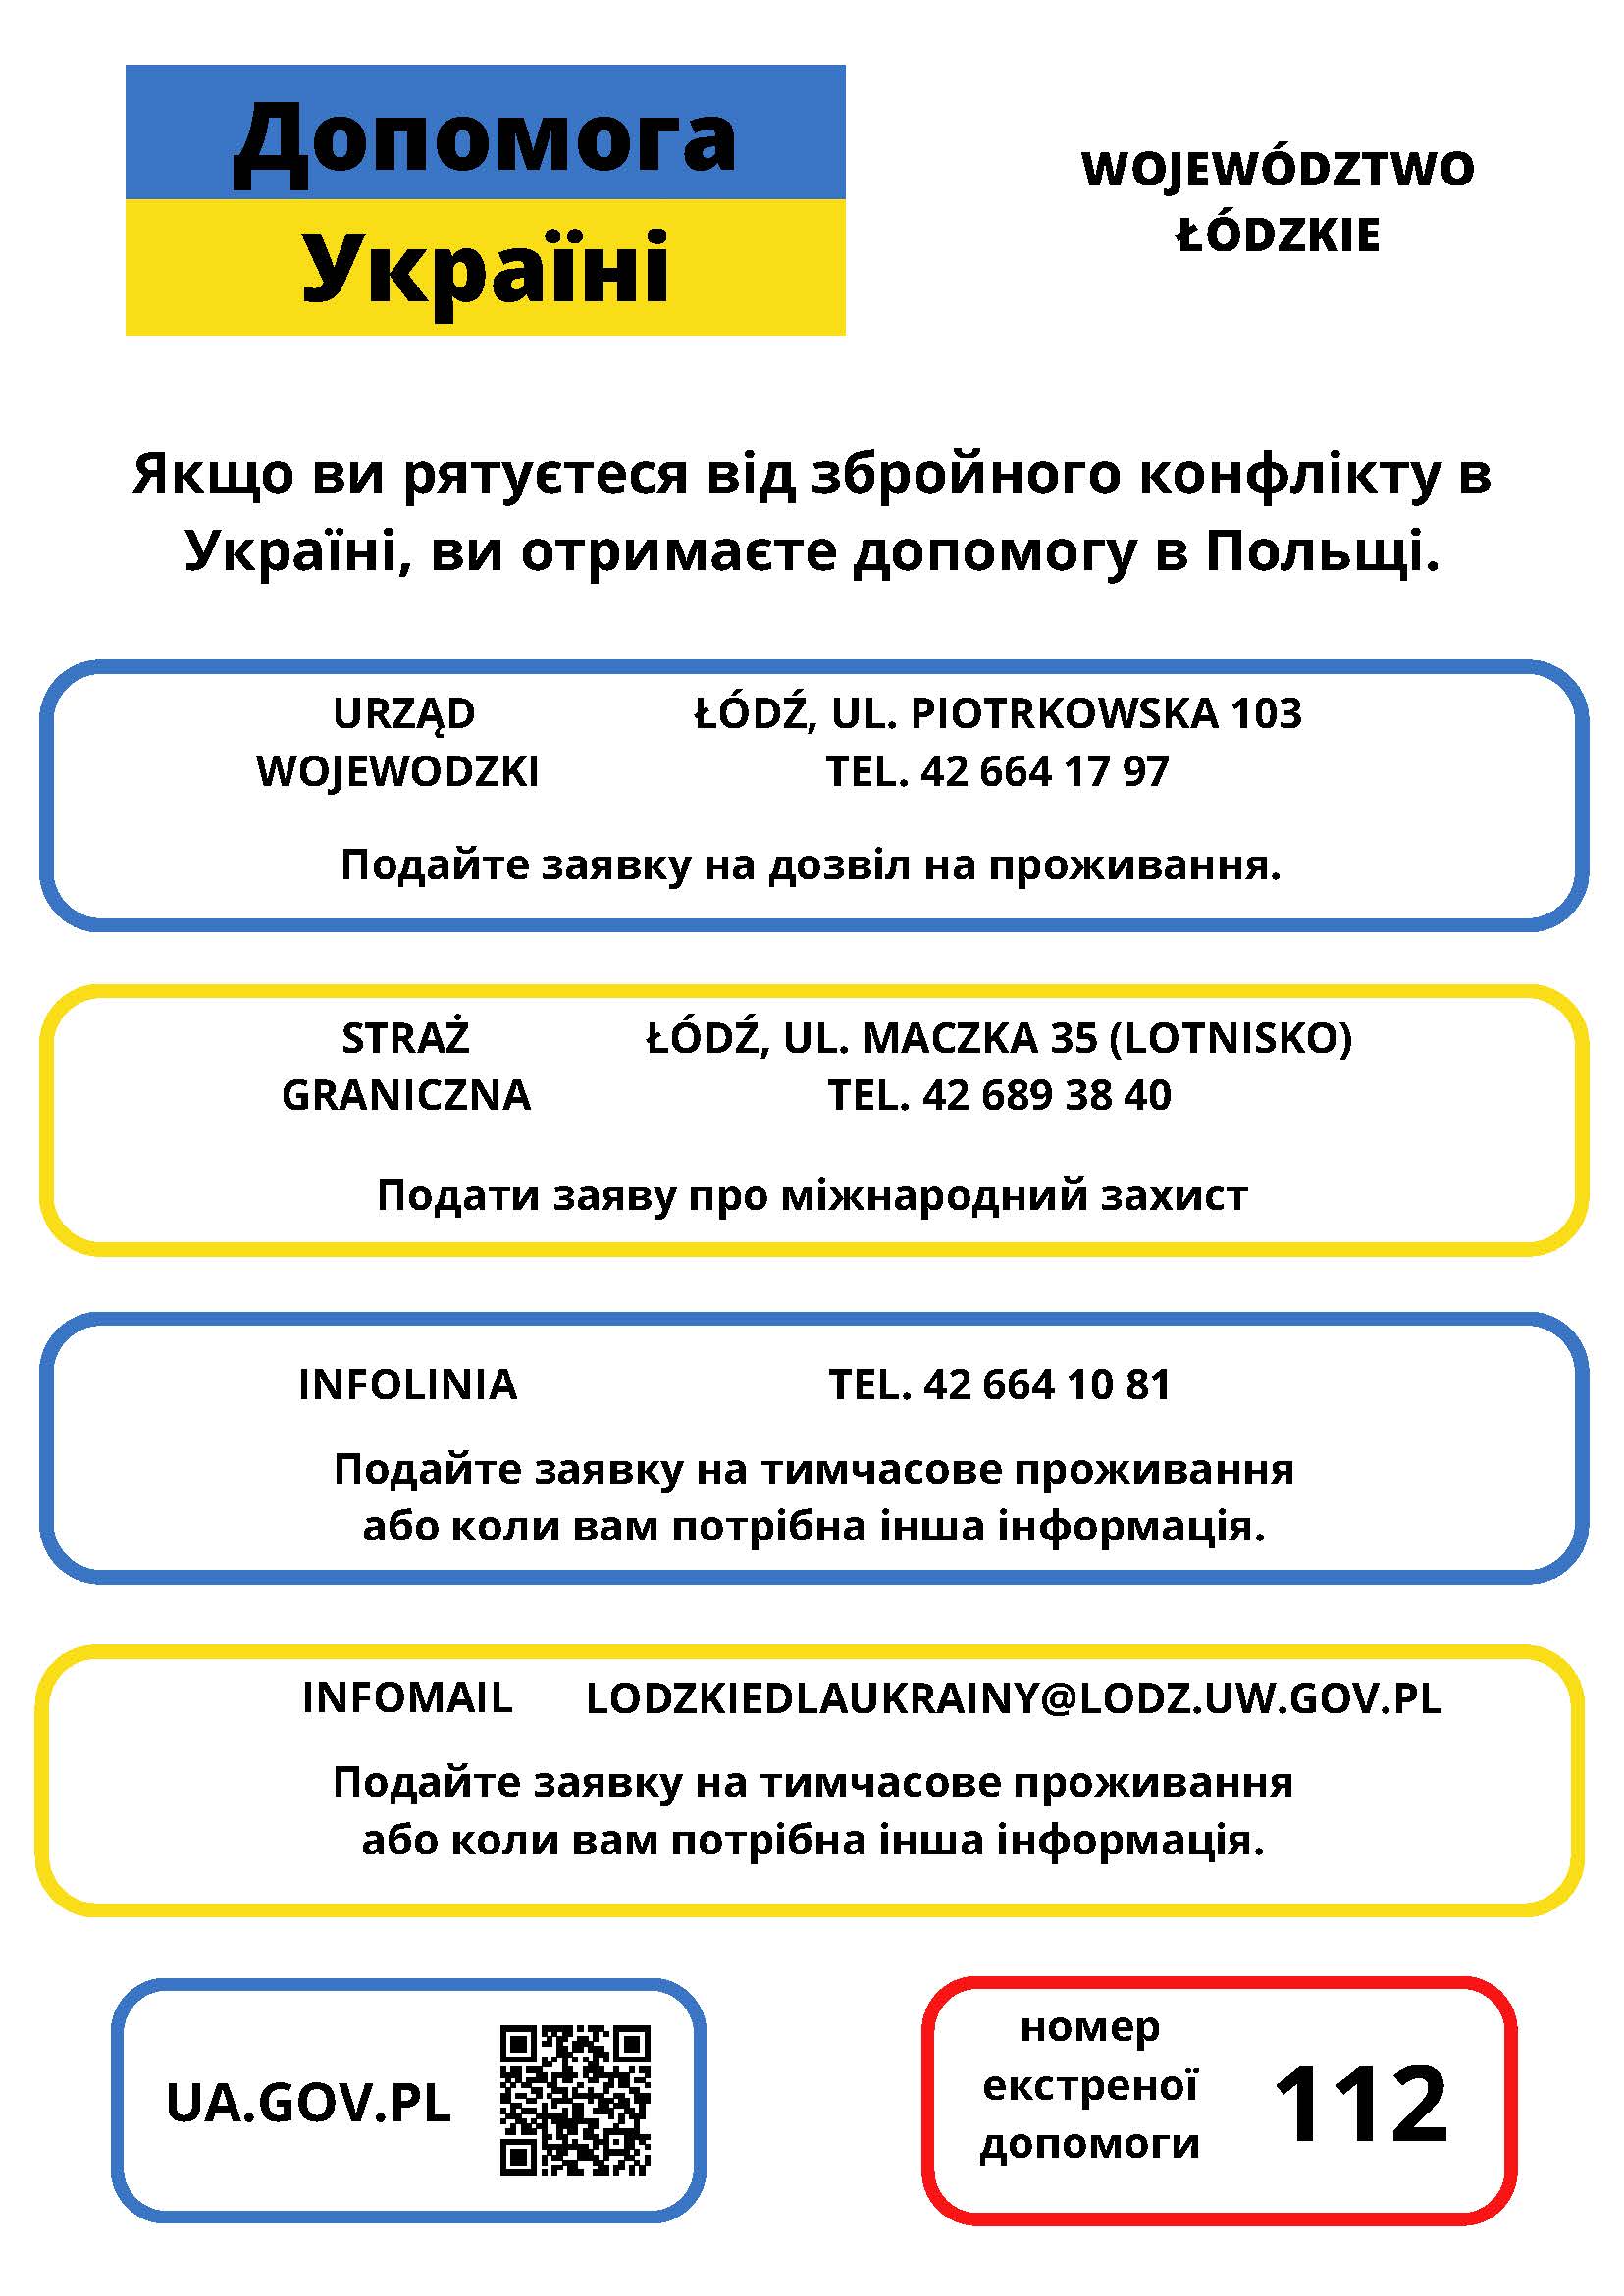 "grafika z napisami w języku ukraińskim zawierająca dane urzędu wojewódzkiego, straży granicznej i infolinii"